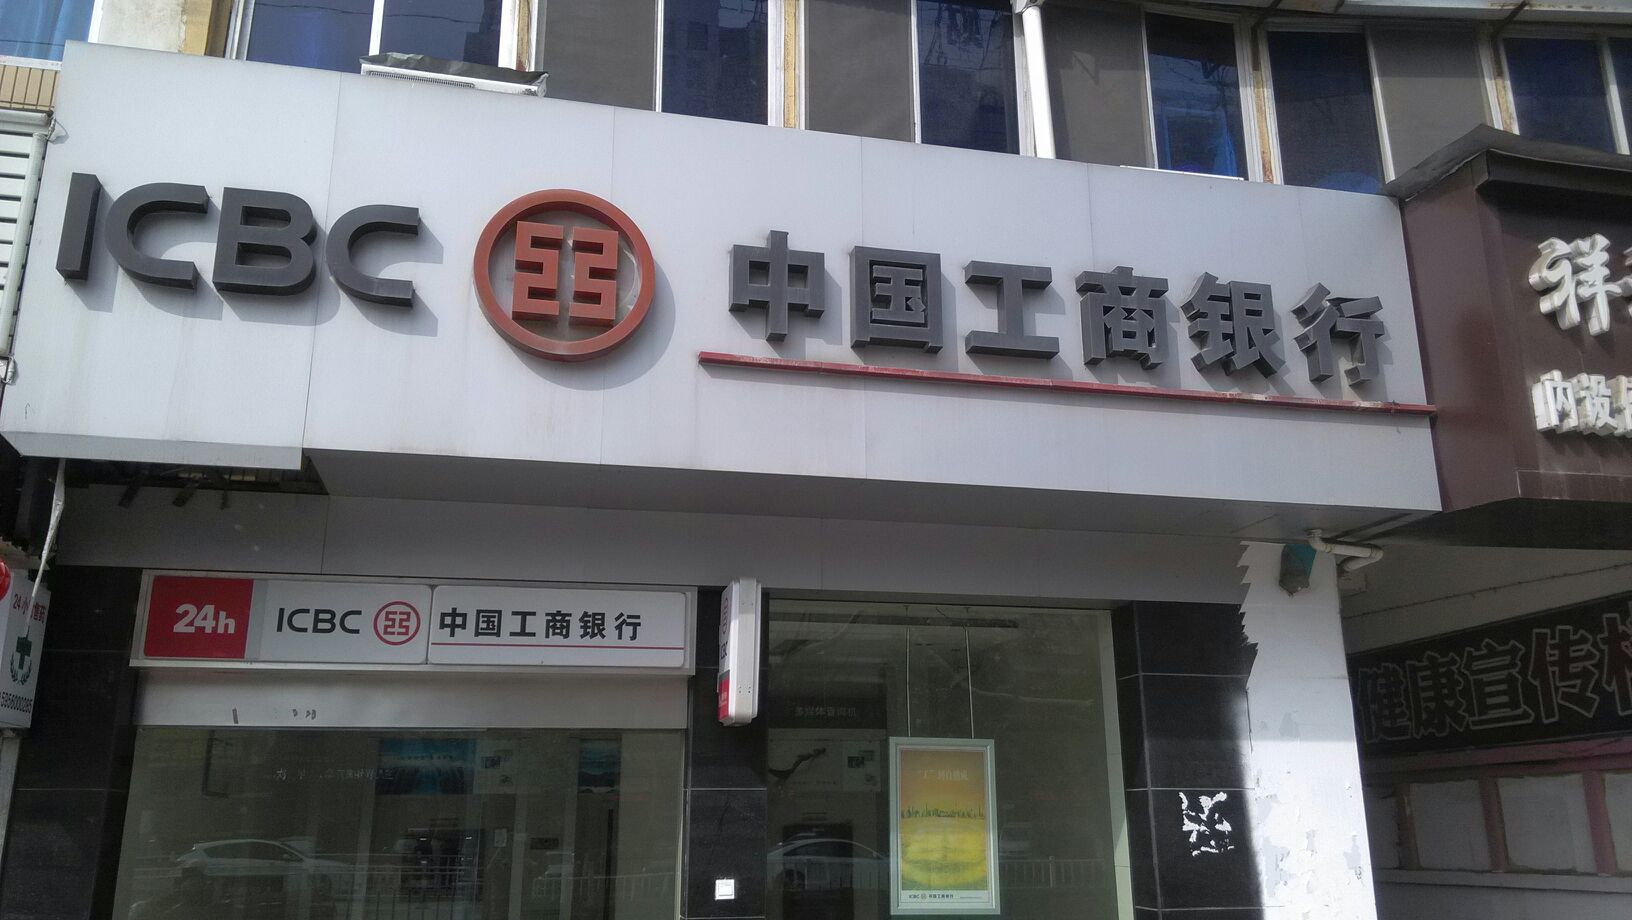 中国工商银行24小时自助银行.(宿州汇通支行)